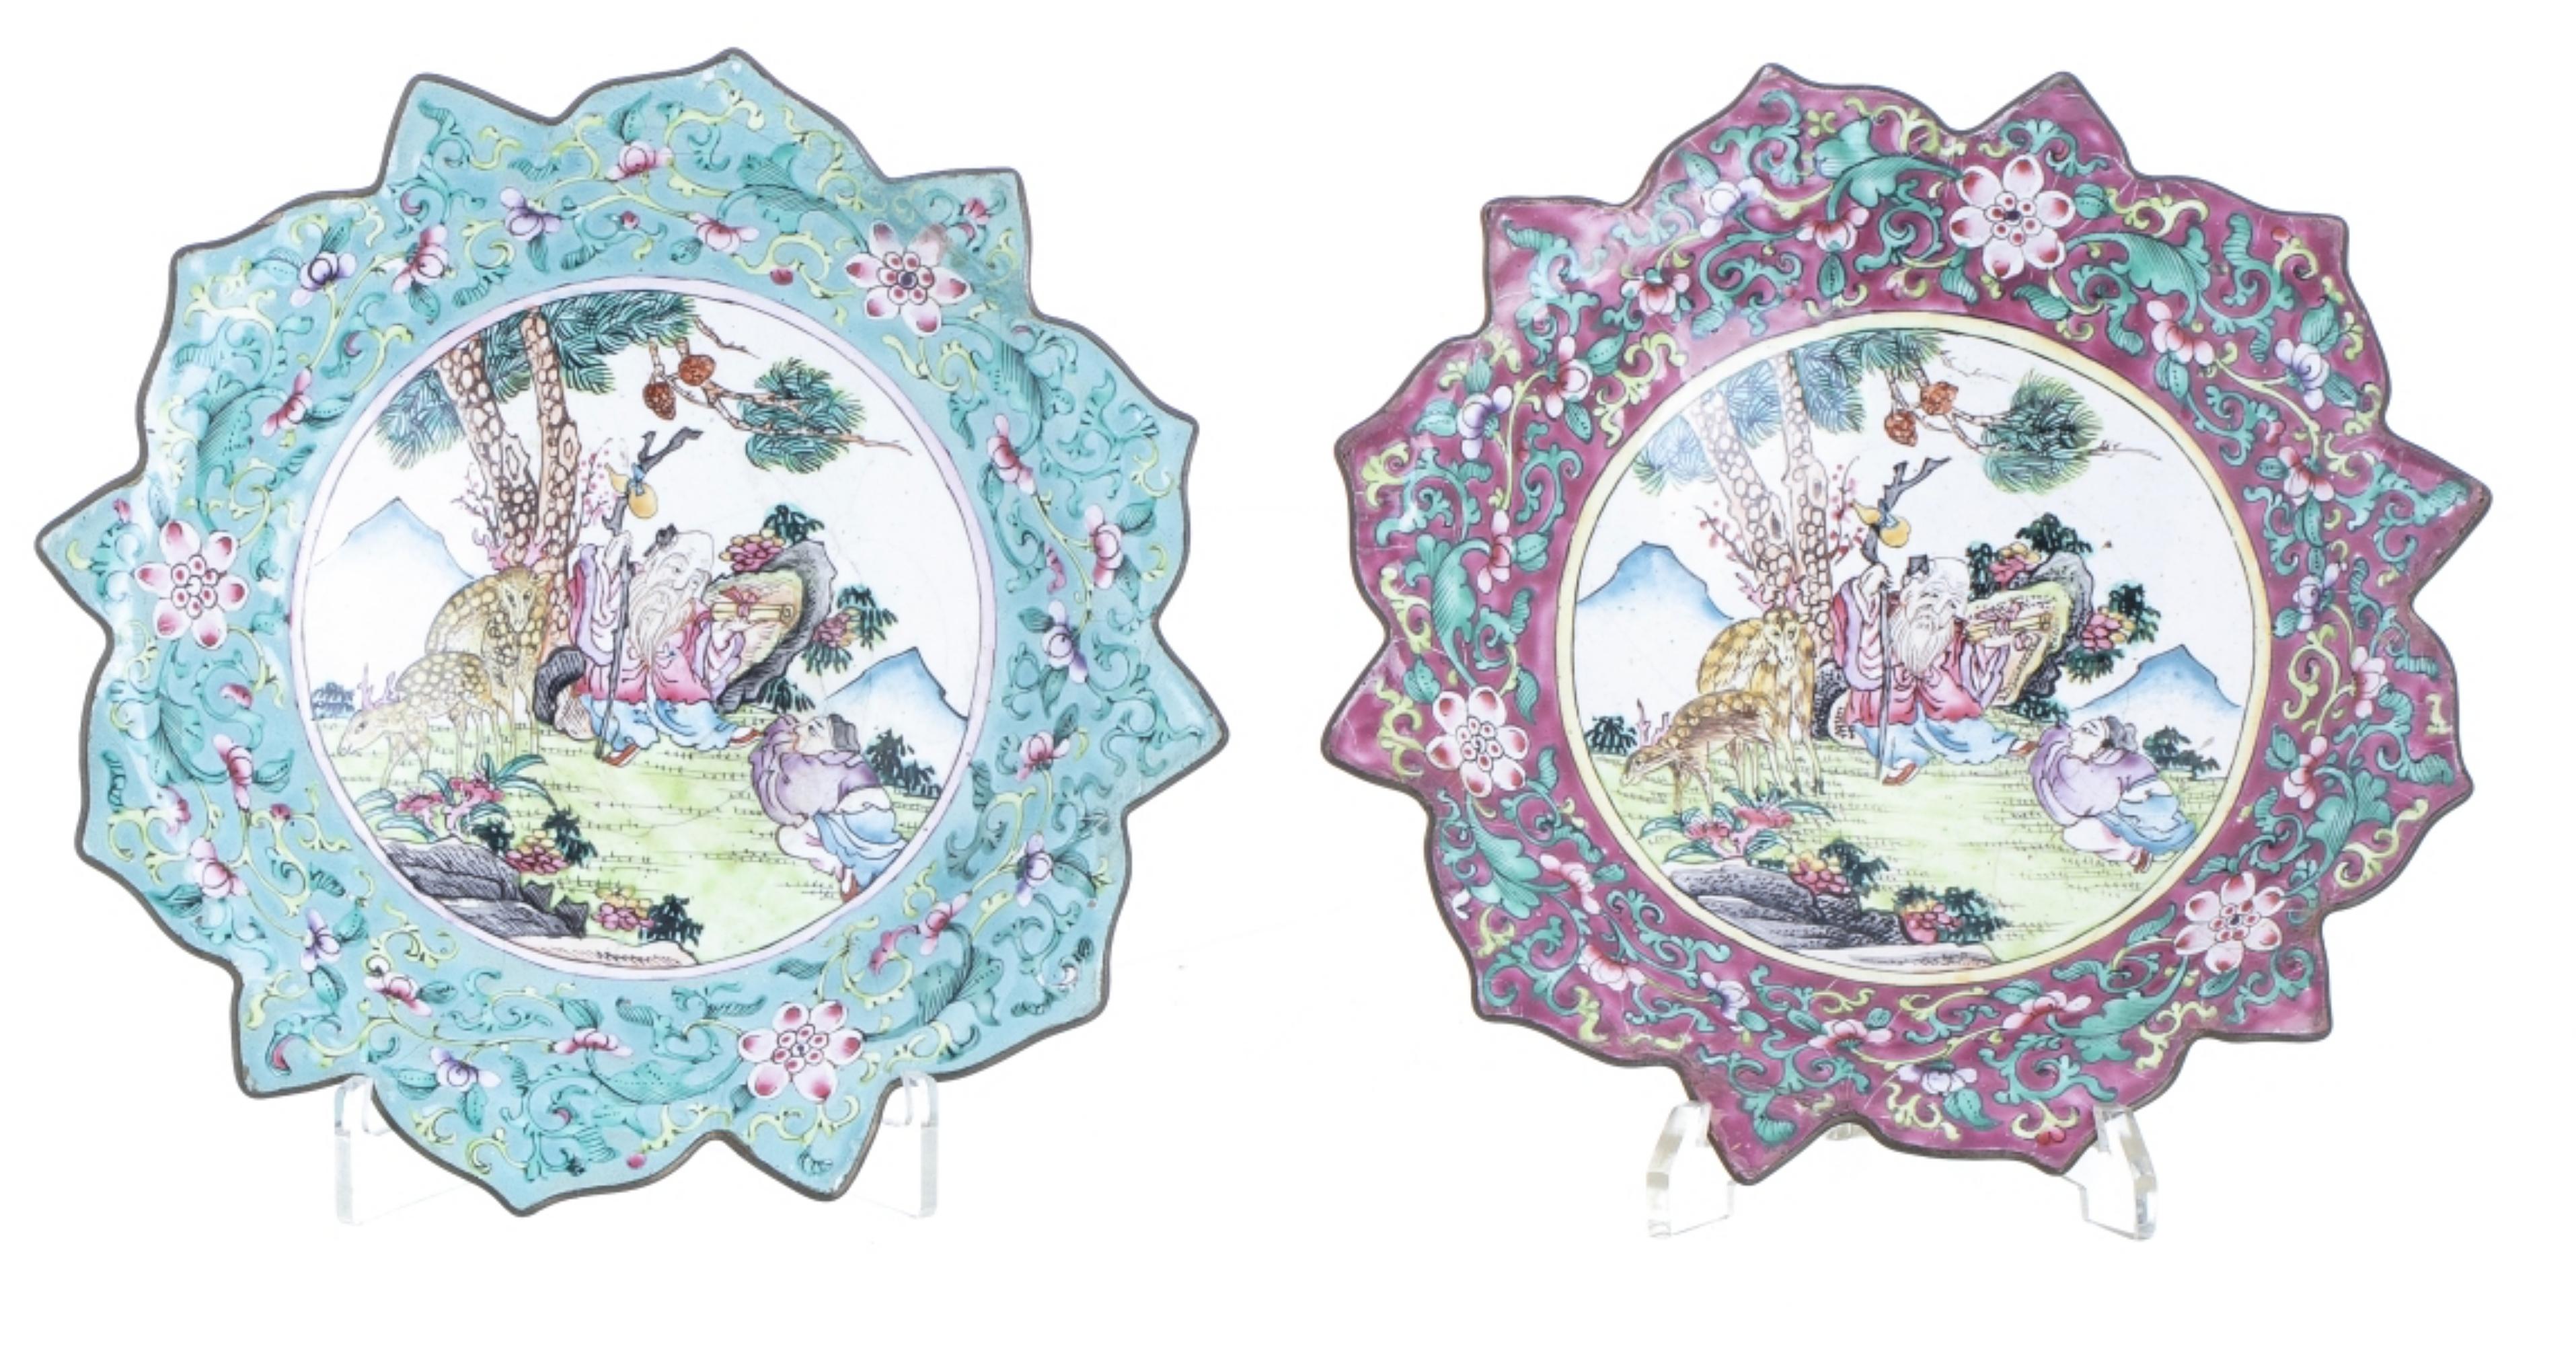 Rare deux plaques découpées.

Chinois, XVIIe siècle
en métal émaillé cloisonné, décoré de motifs floraux avec au centre une réserve avec un paysage oriental représentant des personnages et des animaux. 
Petites restaurations. 
Diamètre : 19